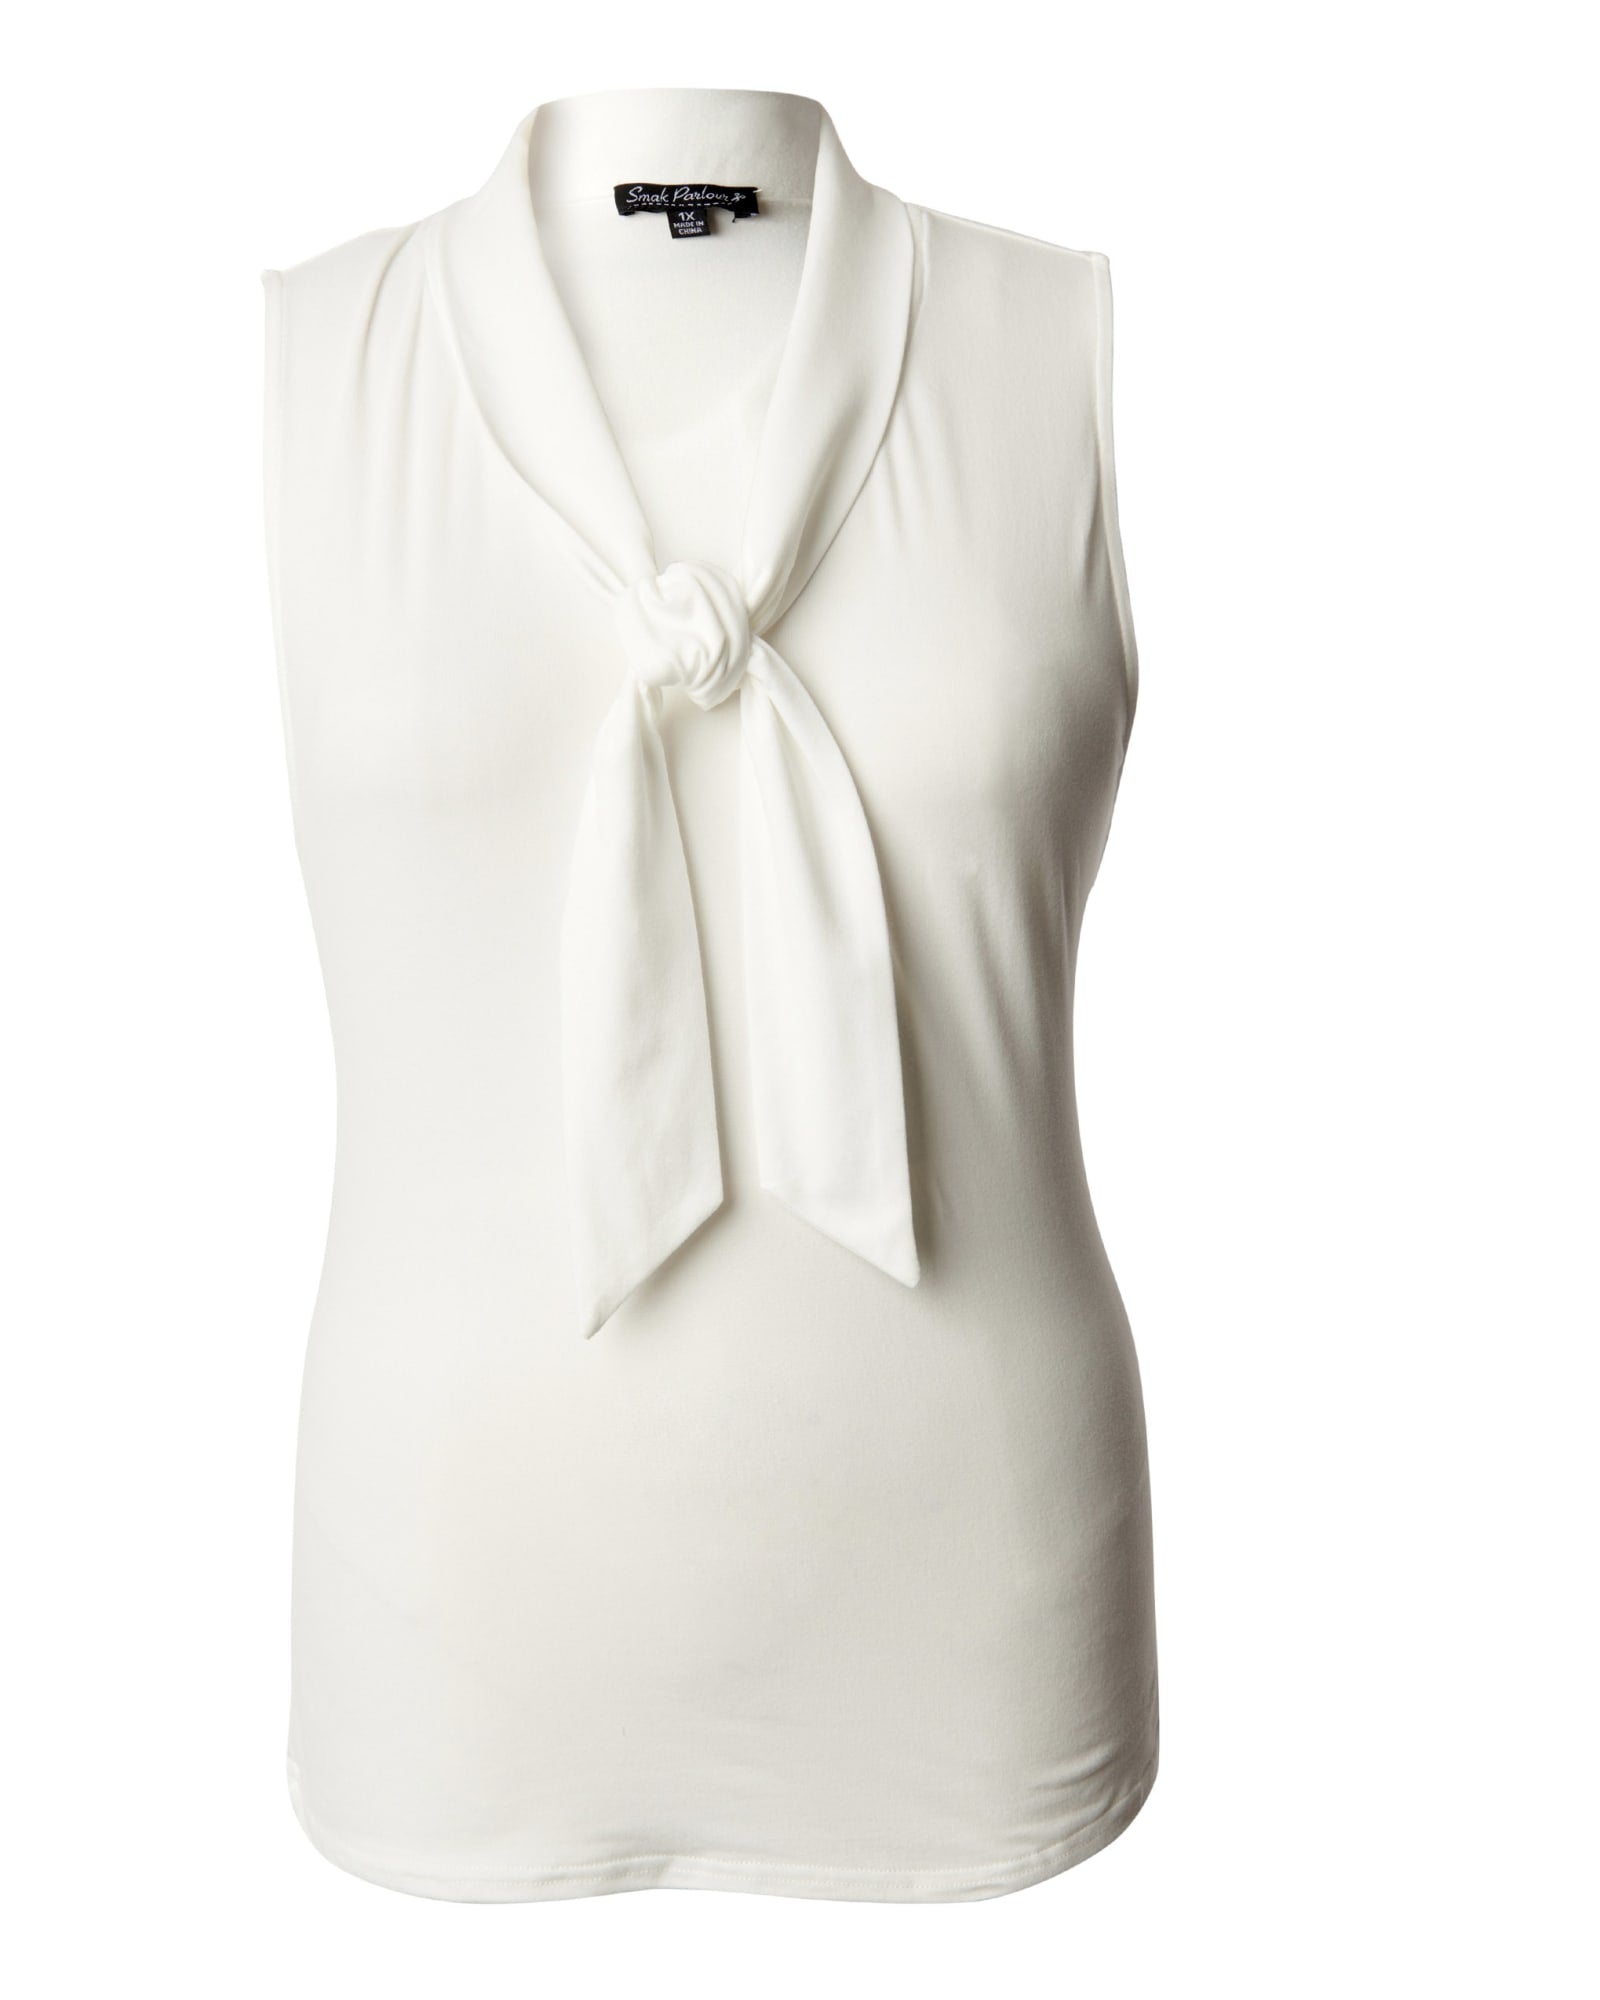 Smak Parlour White Neck Tie Top | White